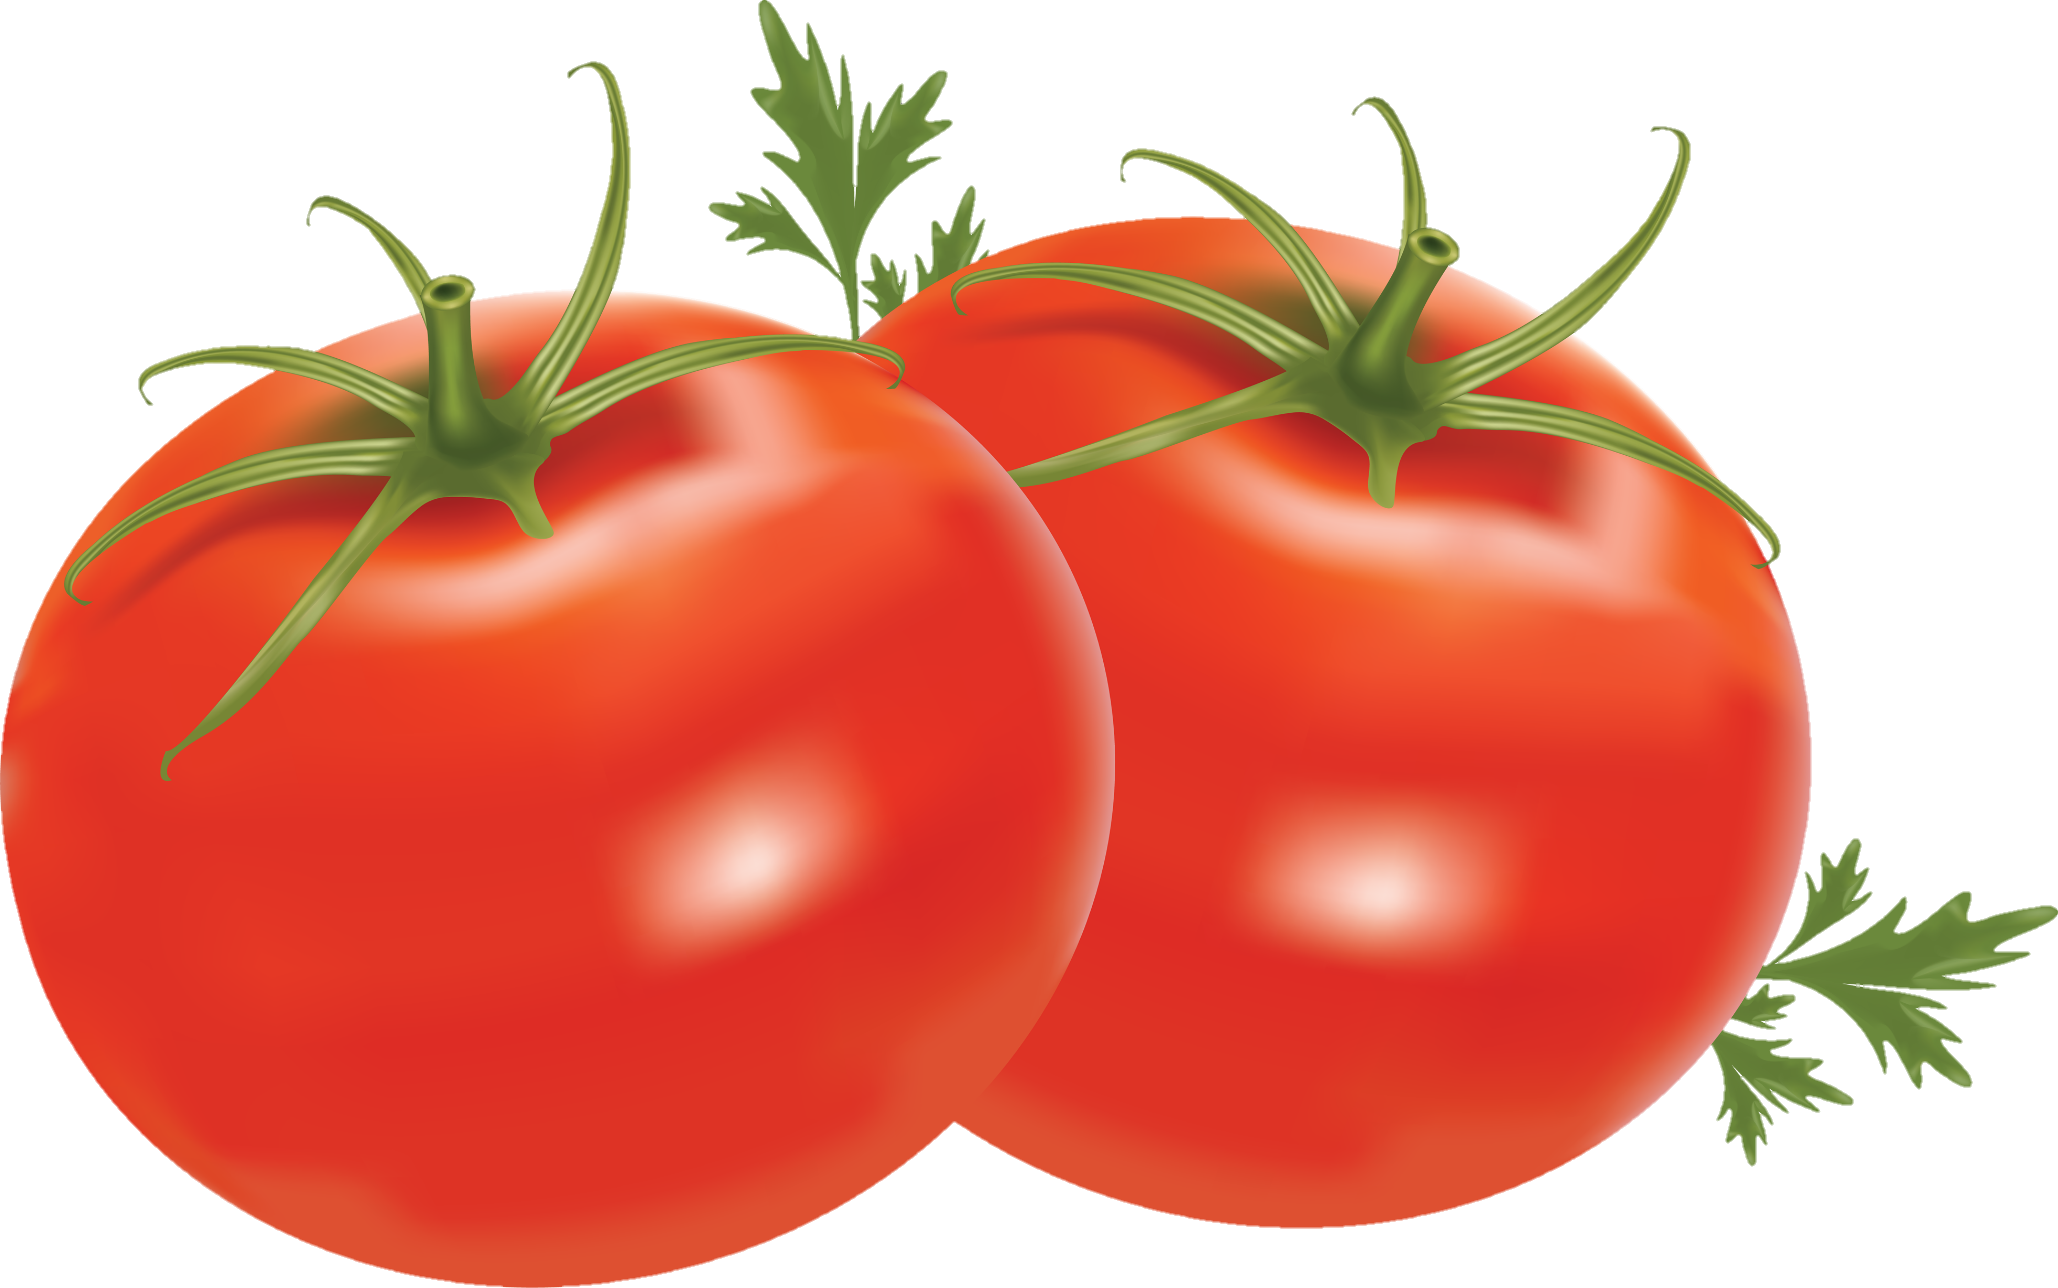 Tomato-24-1